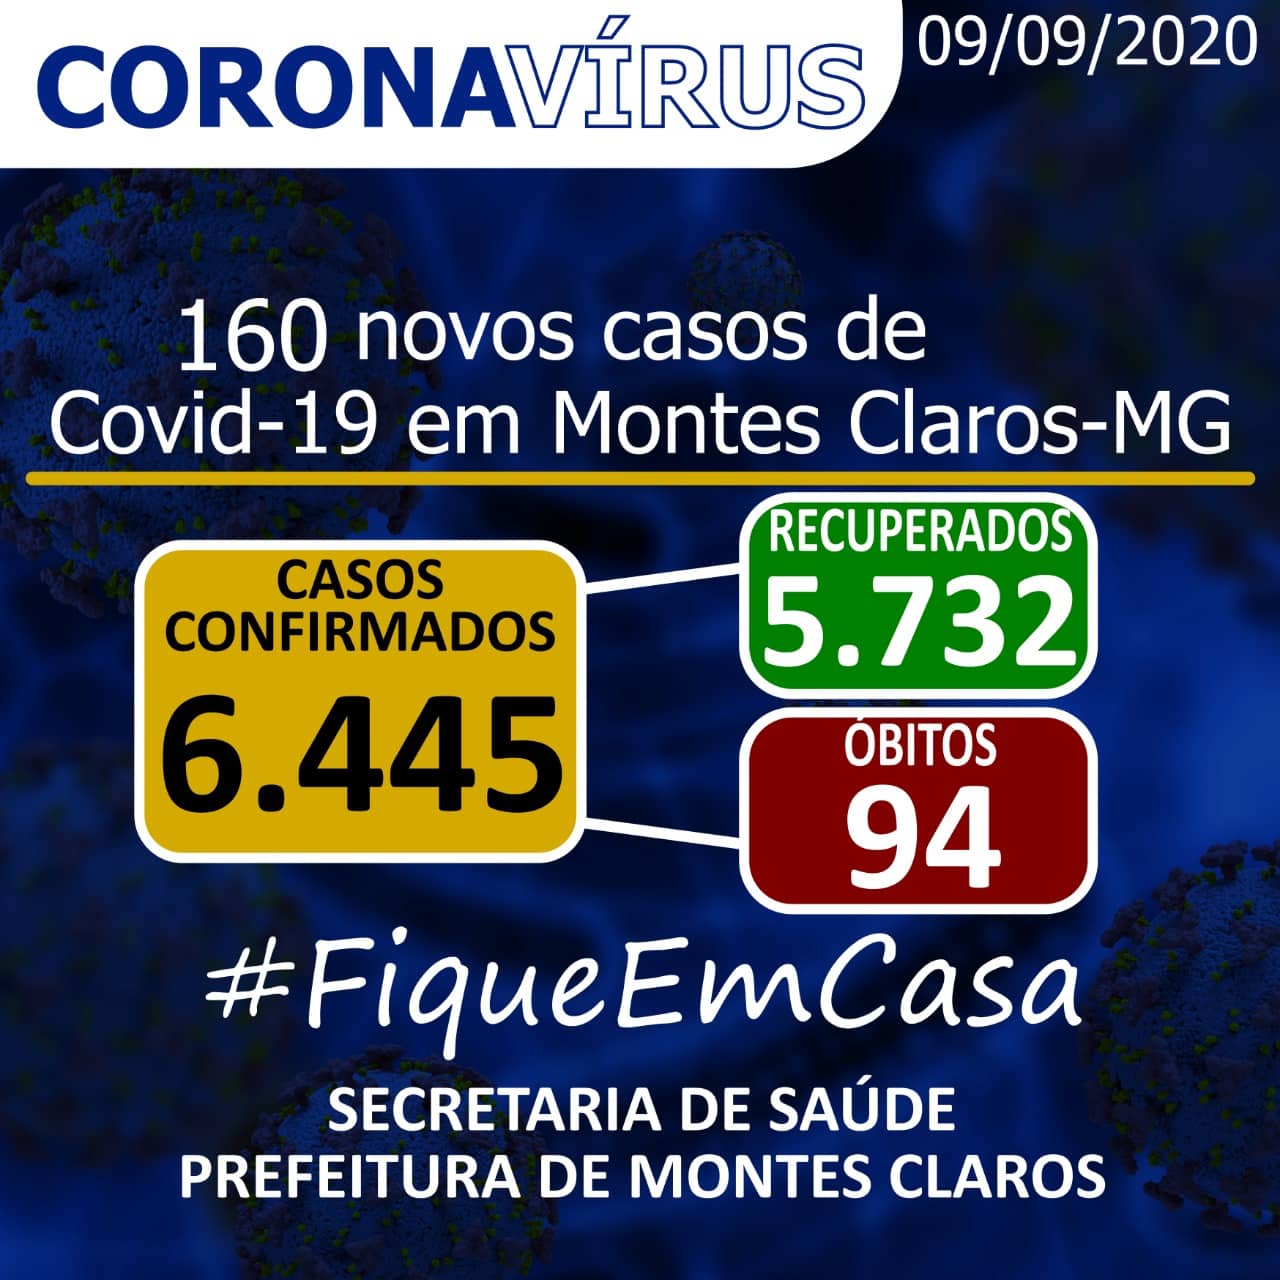 Montes Claros - São registrados 6.445 casos de coronavírus em Montes Claros